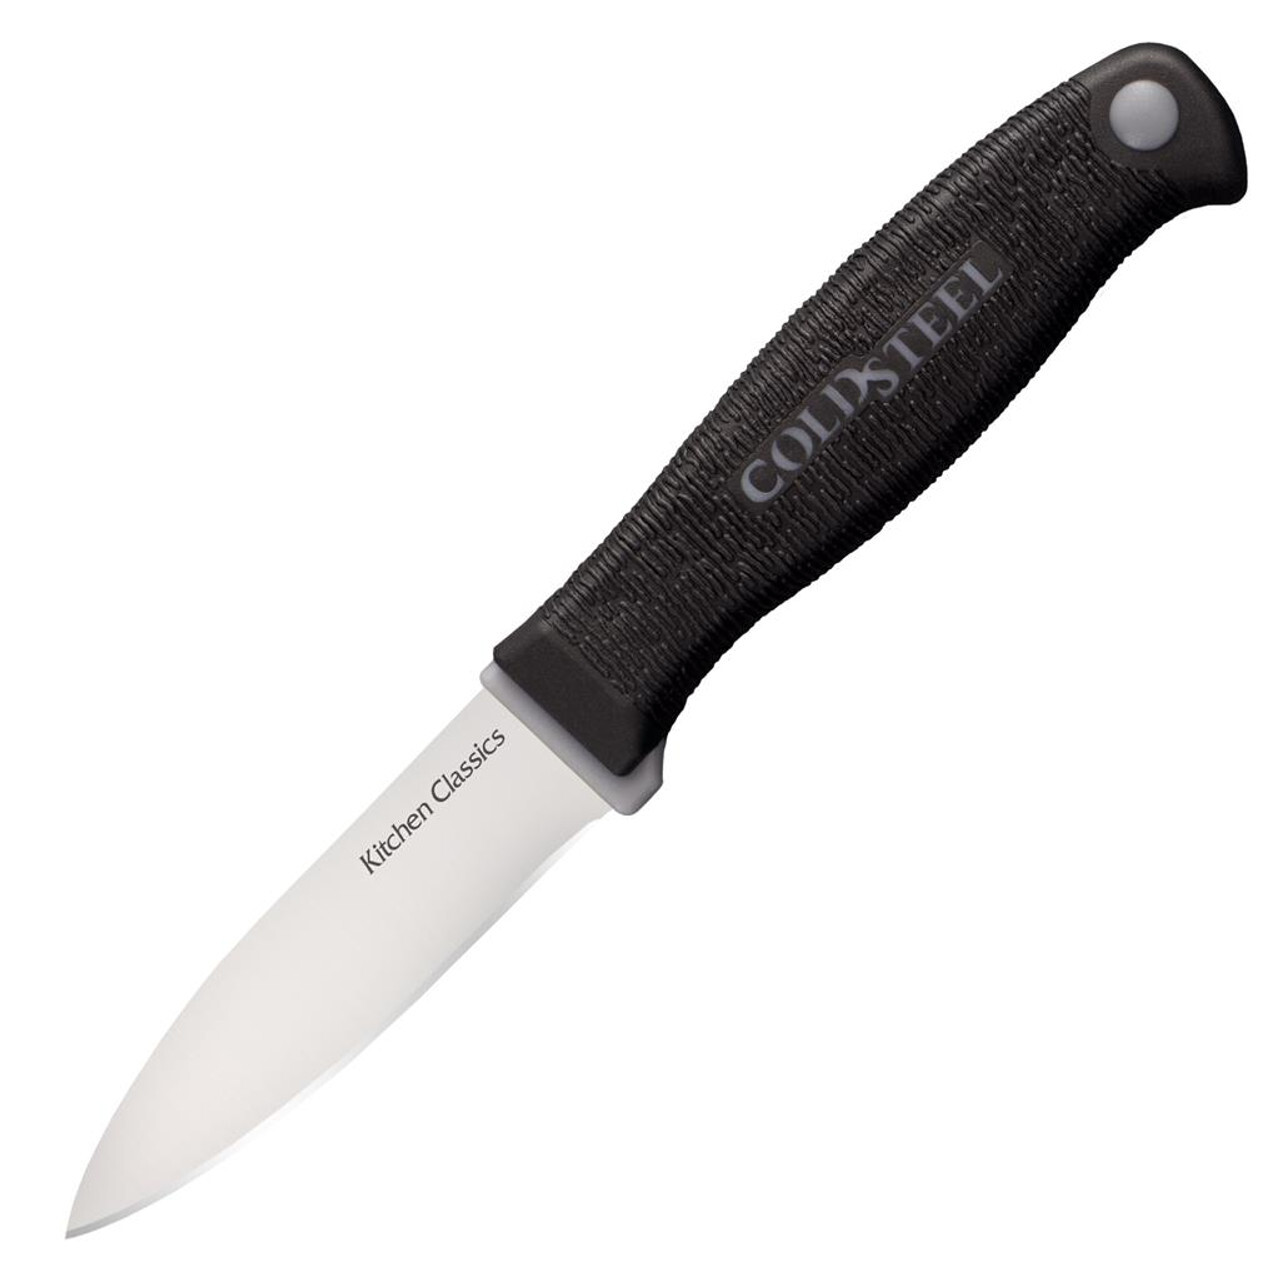 Нож овощной Paring knife (Kitchen Classics), 7.5 см нож овощной henckels 31020 131